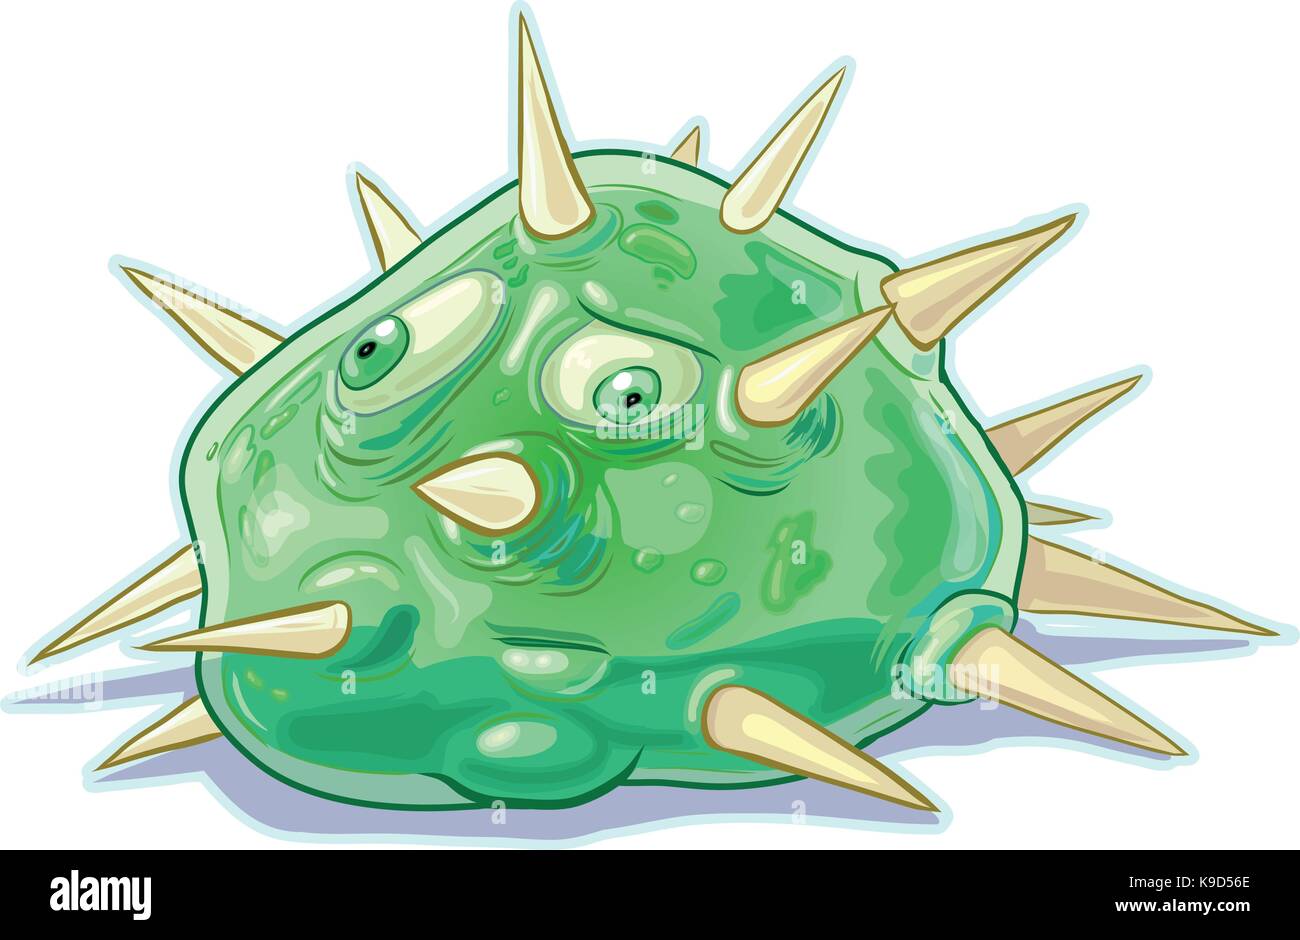 Vektor cartoon Clipart Illustration eines grünen Schleim blob Monster oder Kreatur mit einer stummen Ausdruck auf seinem Gesicht und bedeckt mit Spikes. Gut für ga Stock Vektor